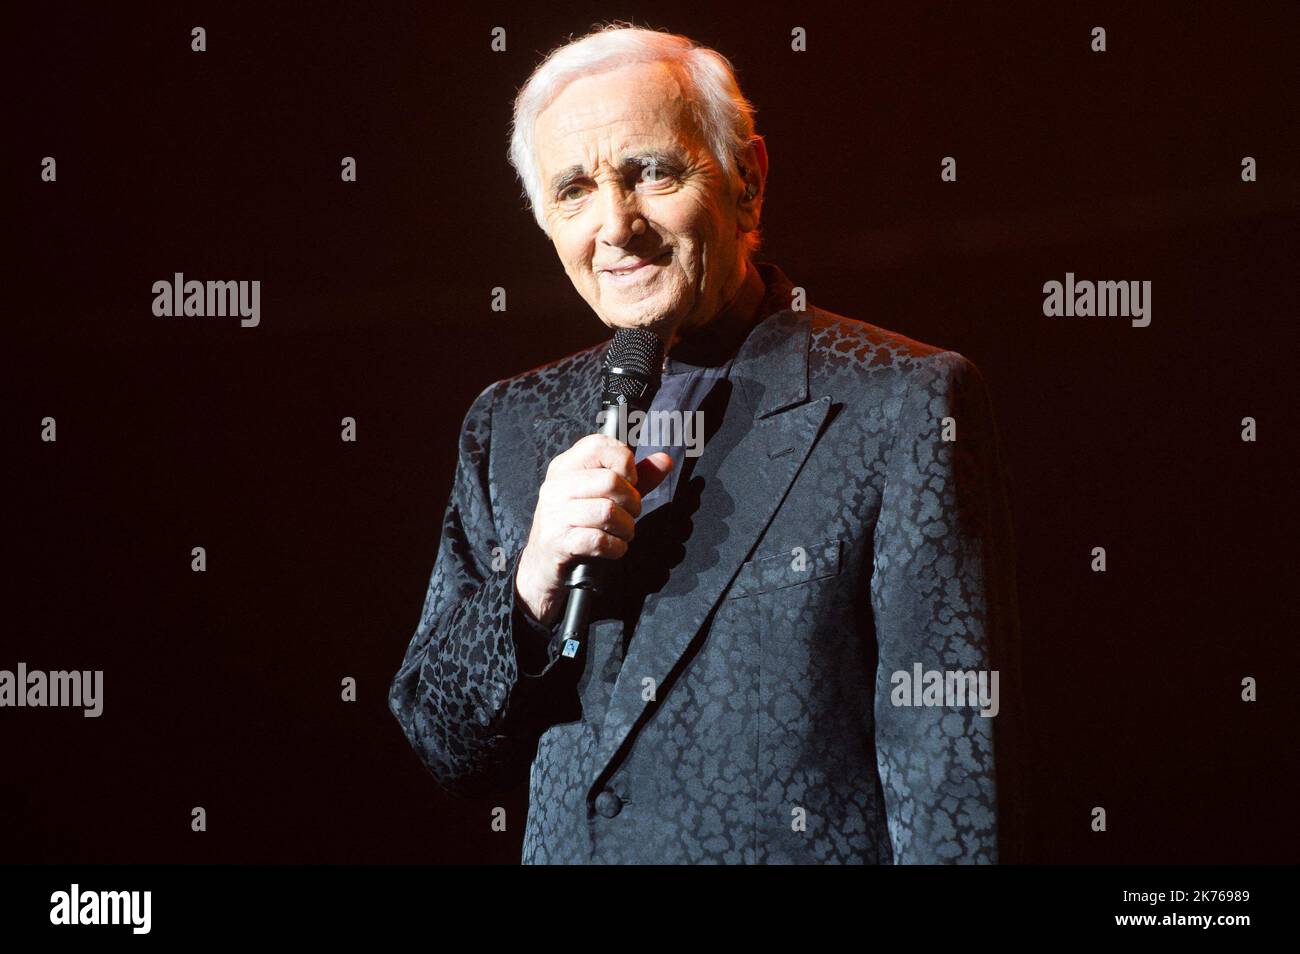 Der französisch-armenische Sänger Charles Aznavour (geboren Shahnour Varinag Aznavourian) spielt am Sonntag, den 1.. Juni 2014, anlässlich seines 90.. Geburtstages auf seiner Abschiedstour in der Royal Albert Hall, London, England, Großbritannien. Der französische Sänger und Songwriter Charles Aznavour ist mit 94 Jahren nach einer mehr als 80-jährigen Karriere gestorben, sagt ein Sprecher. Der französische und armenische Künstler verkauften über 180 Millionen Schallplatten. Stockfoto